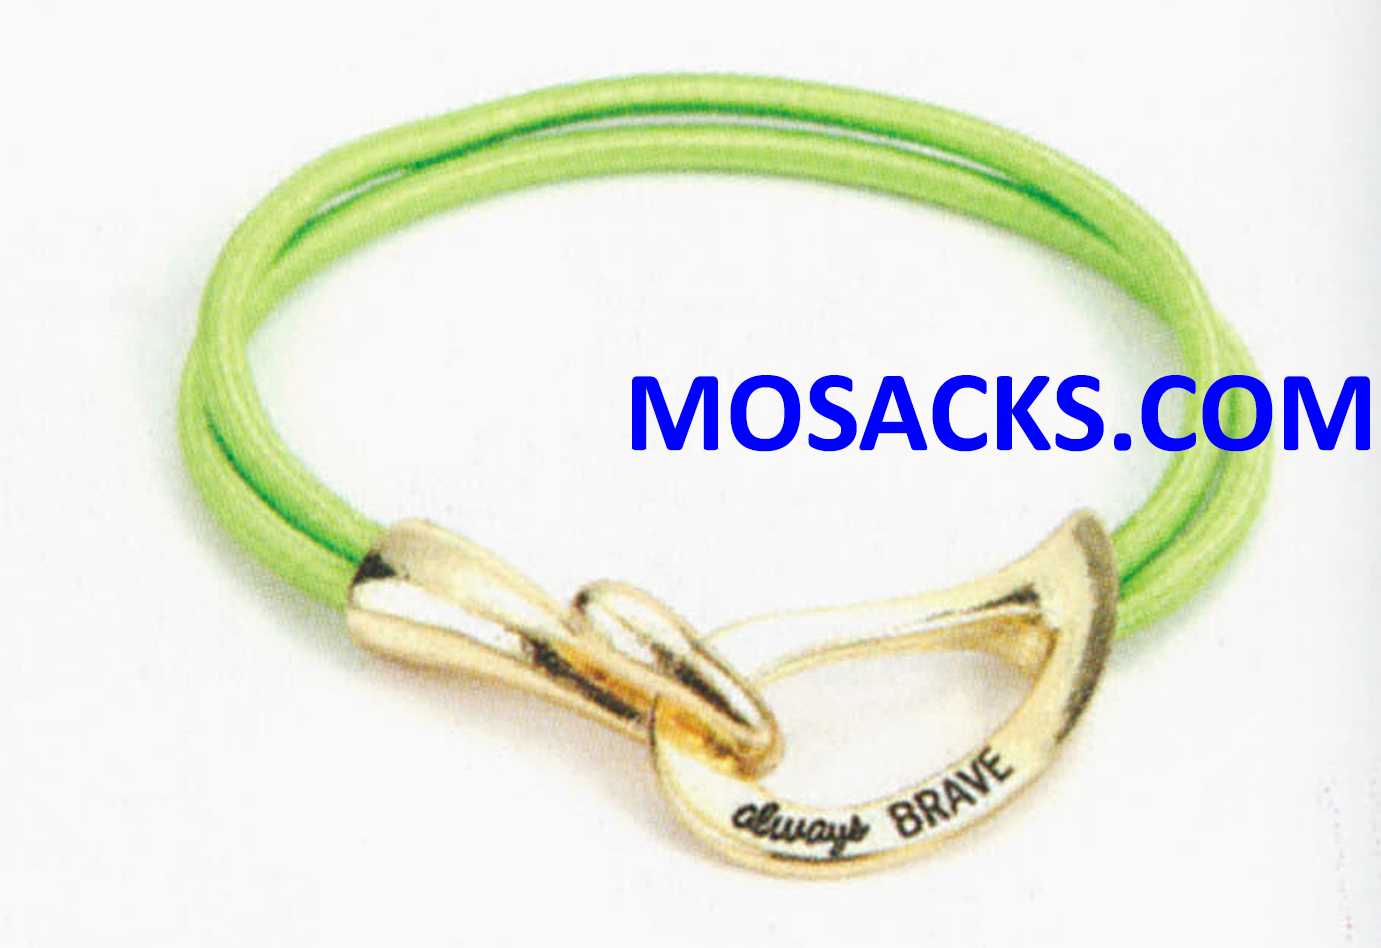 Always Brave Cancer Awareness Bracelet Gold Lime Green 452-220843